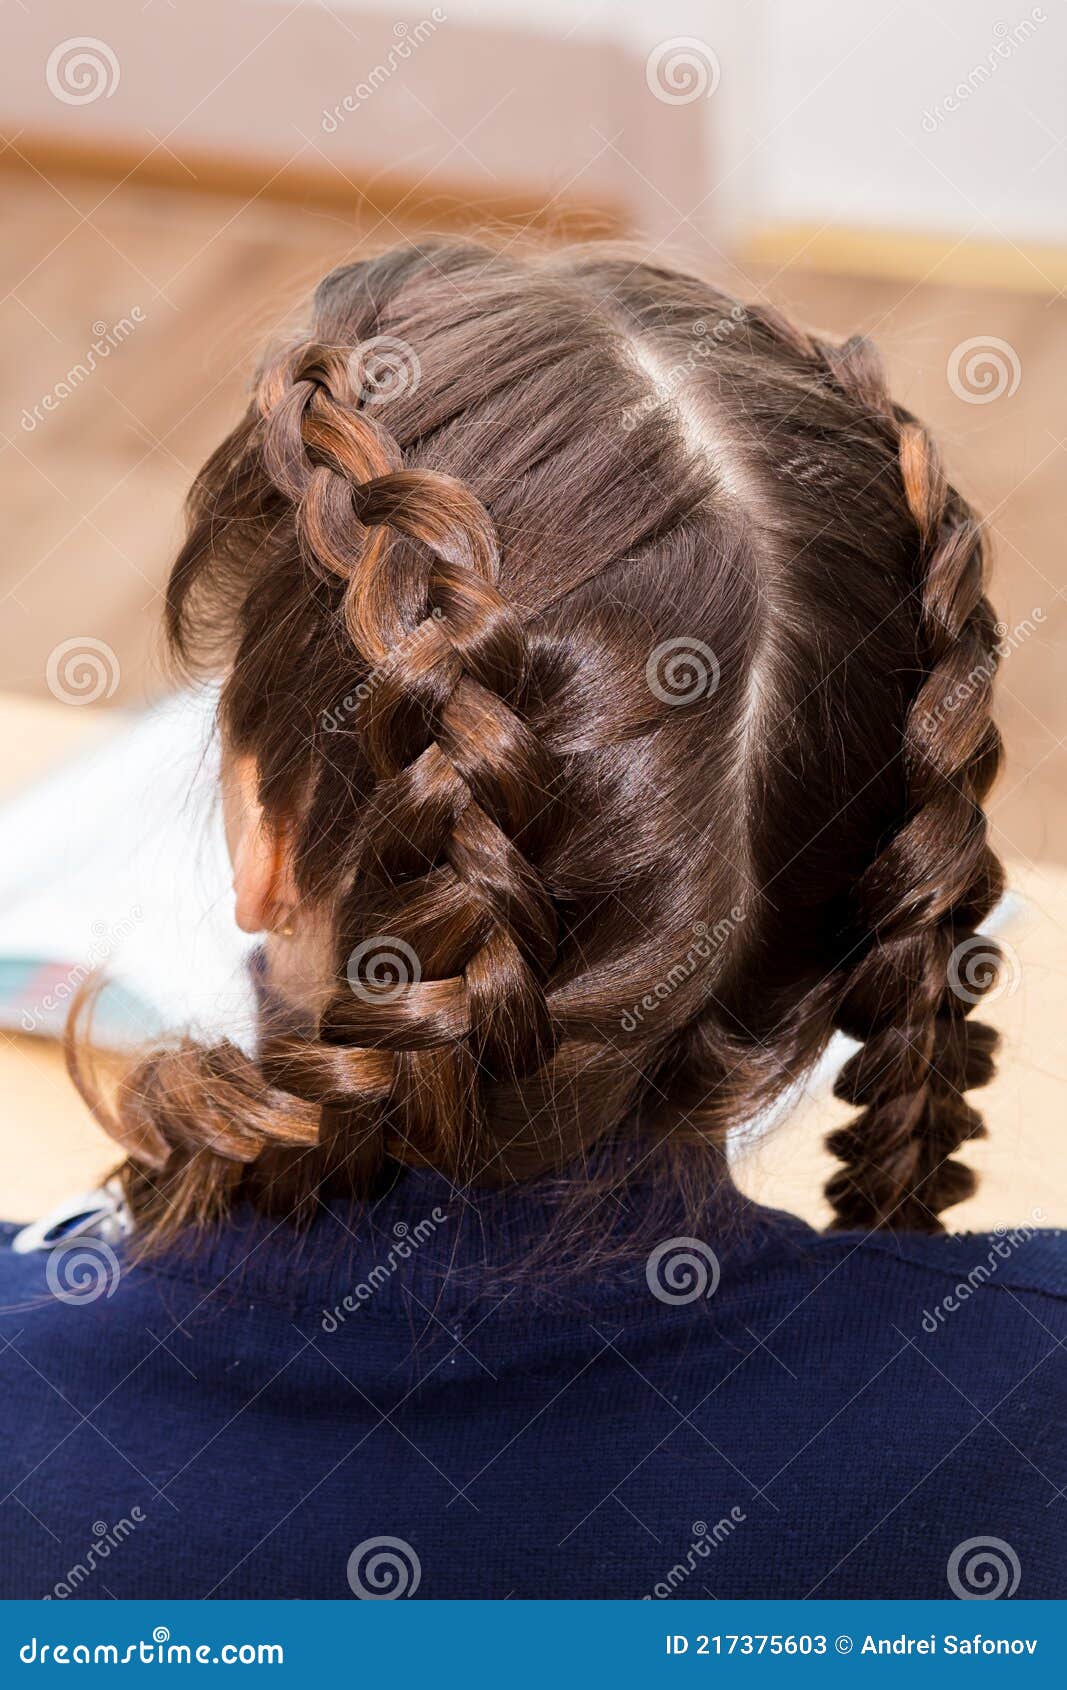 O Penteado Das Meninas é Travado Em Duas Tranças Com Uma Parada Fechada.  Imagem de Stock - Imagem de feito, cabeleireiro: 217375603